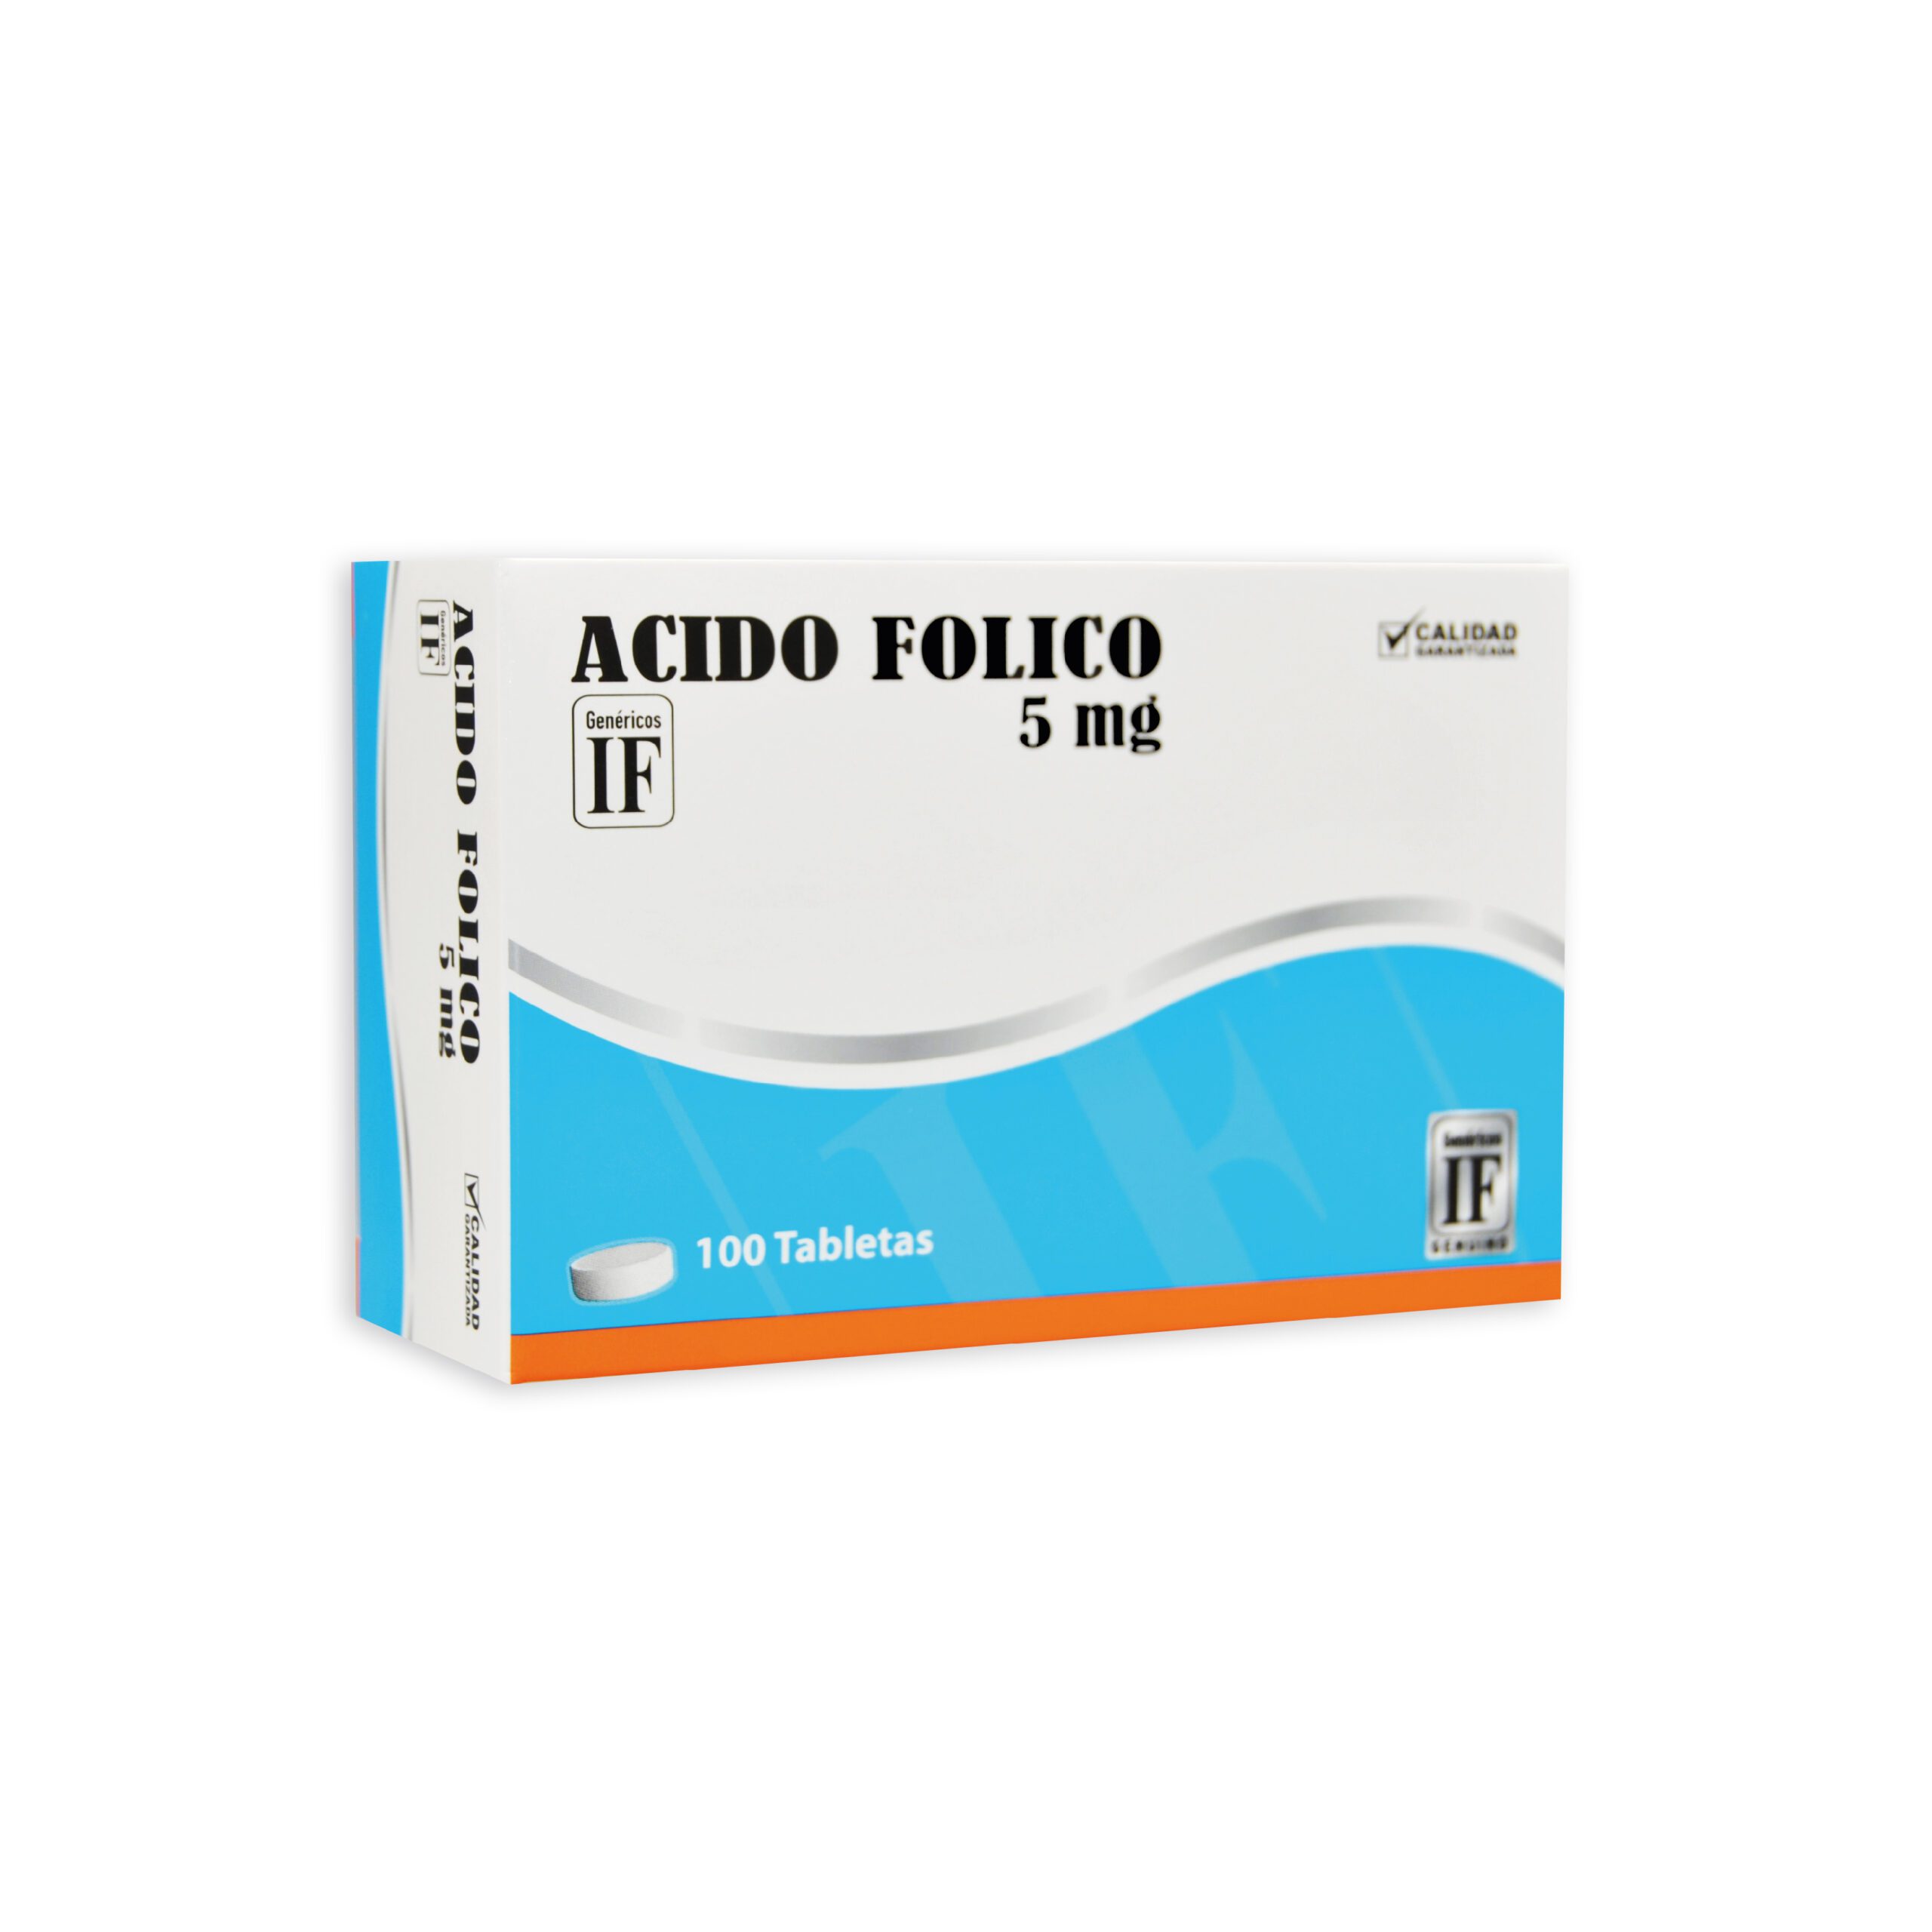 ACIDO FOLICO 5 mg IF – Ibero Fármacos